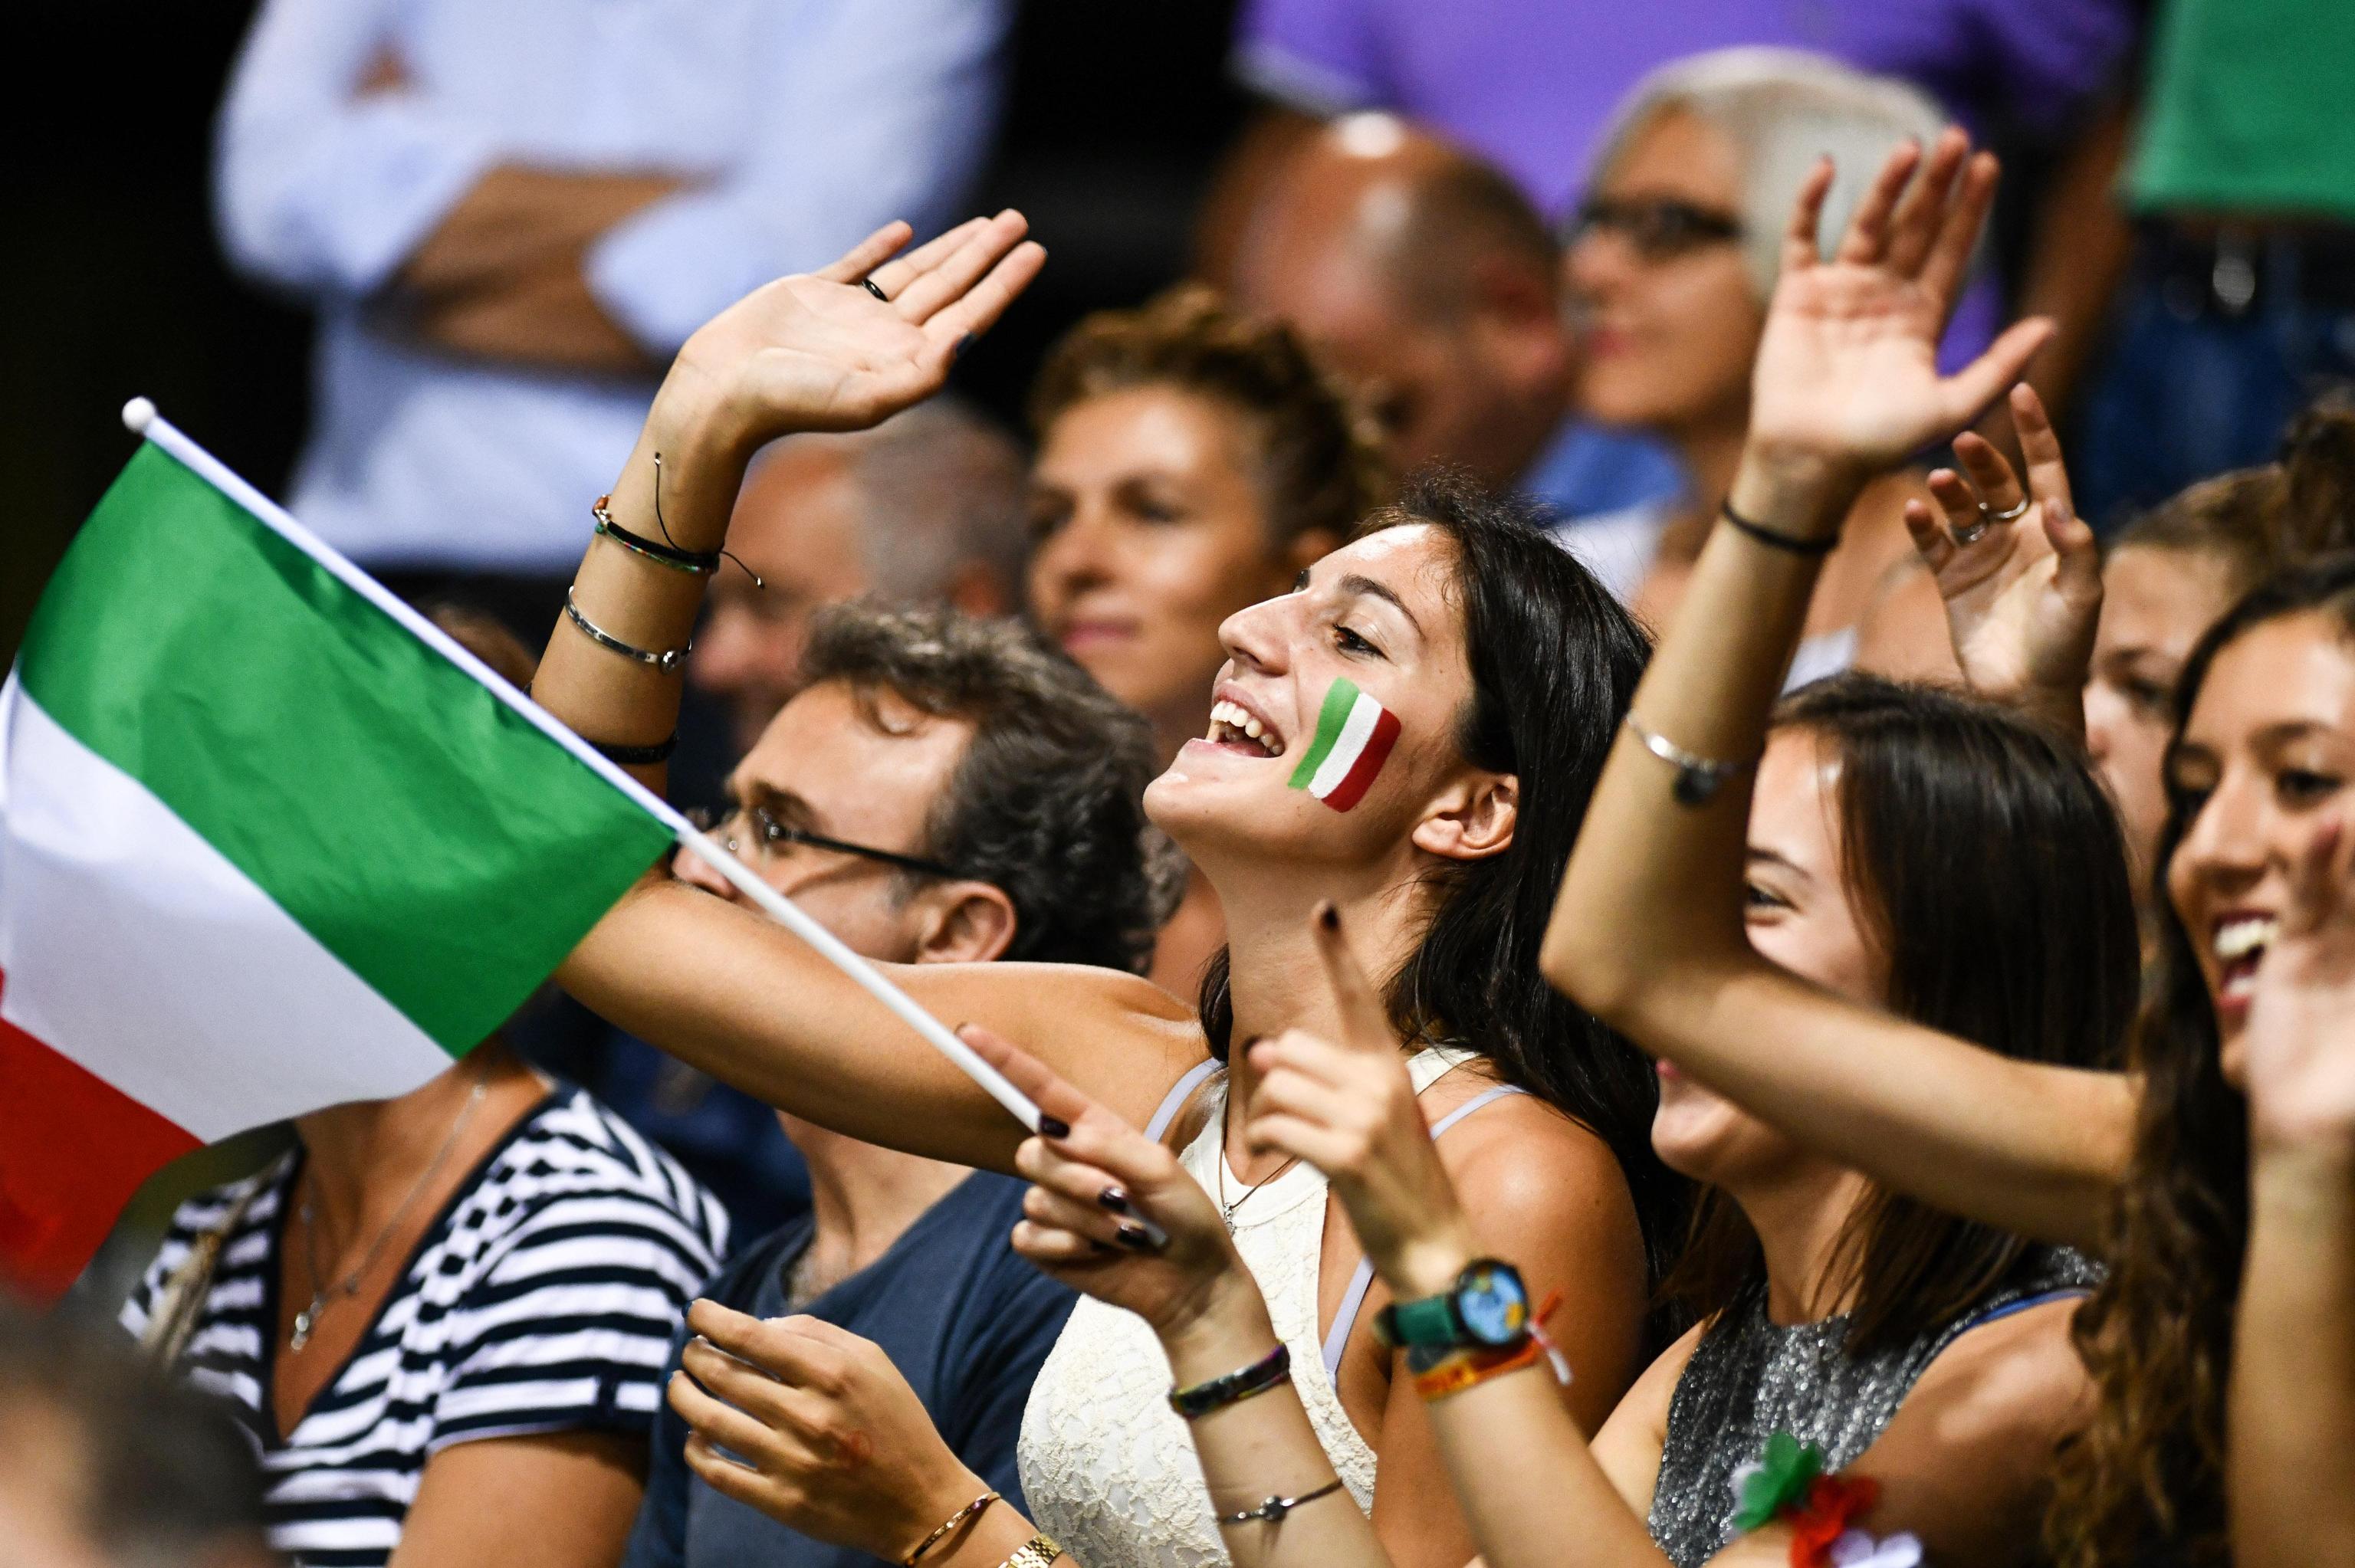 Il Mandela Forum di Firenze strapieno per il match dell'Italia